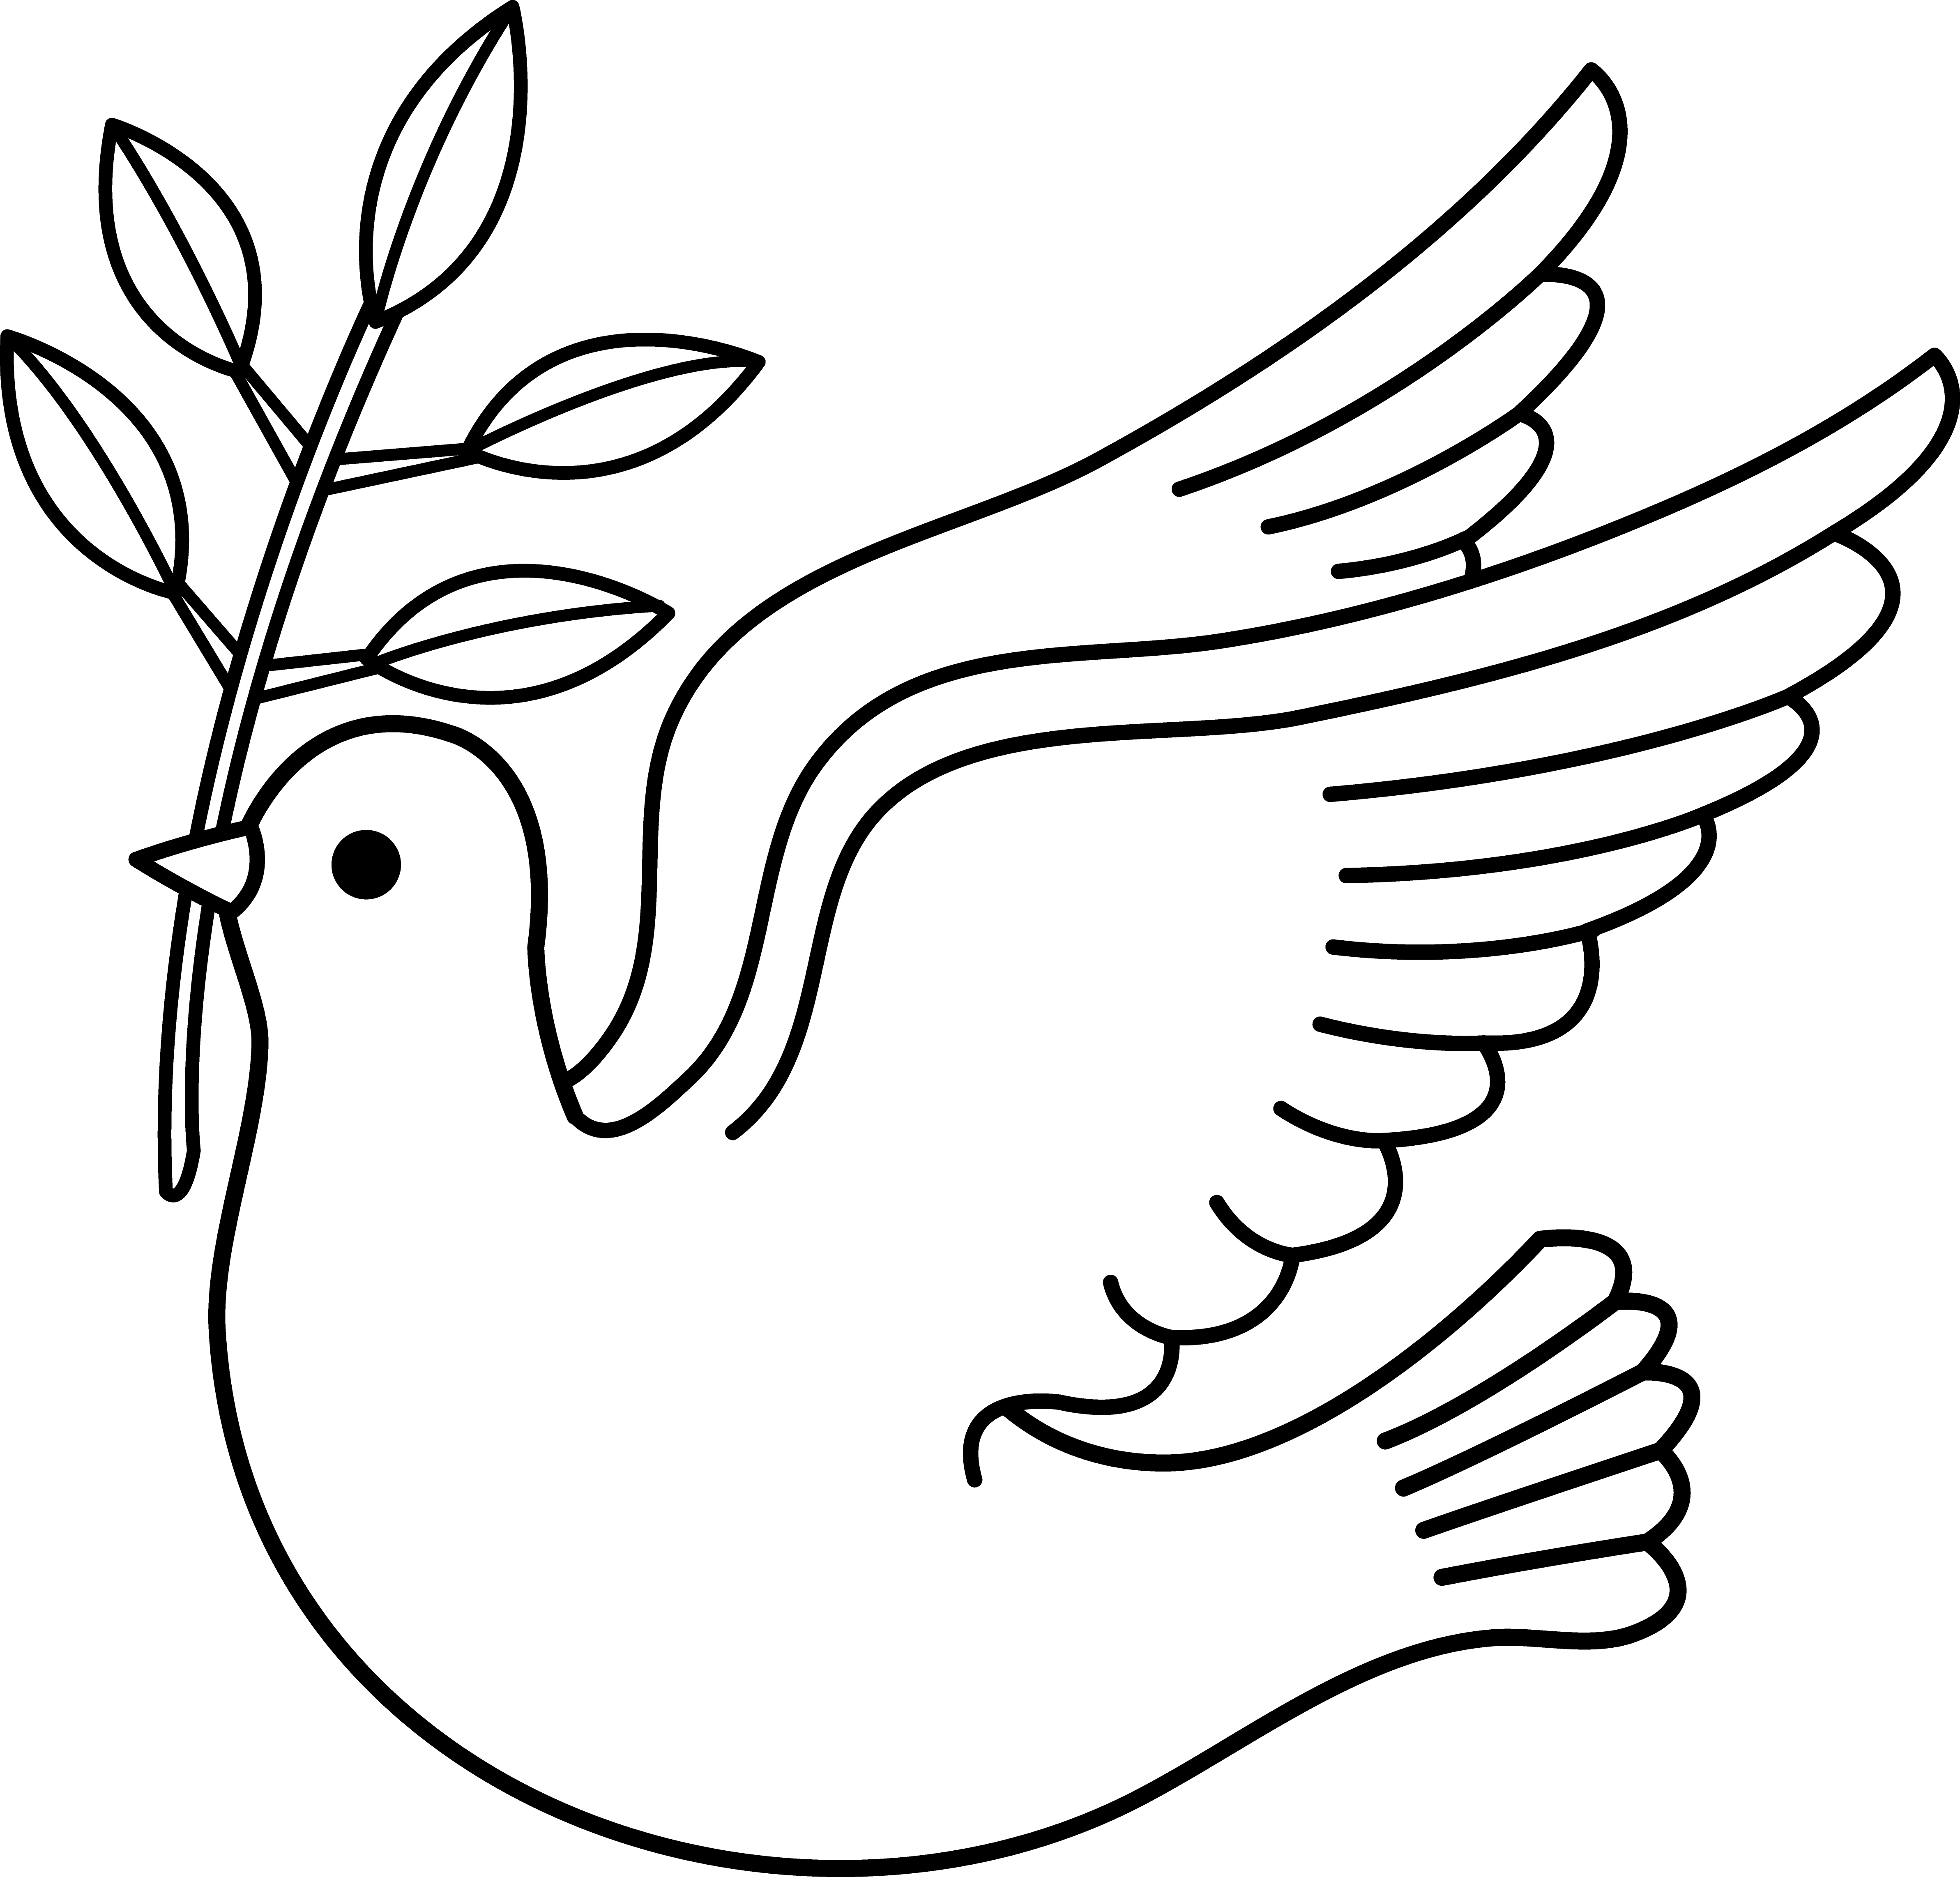 Free peace dove.